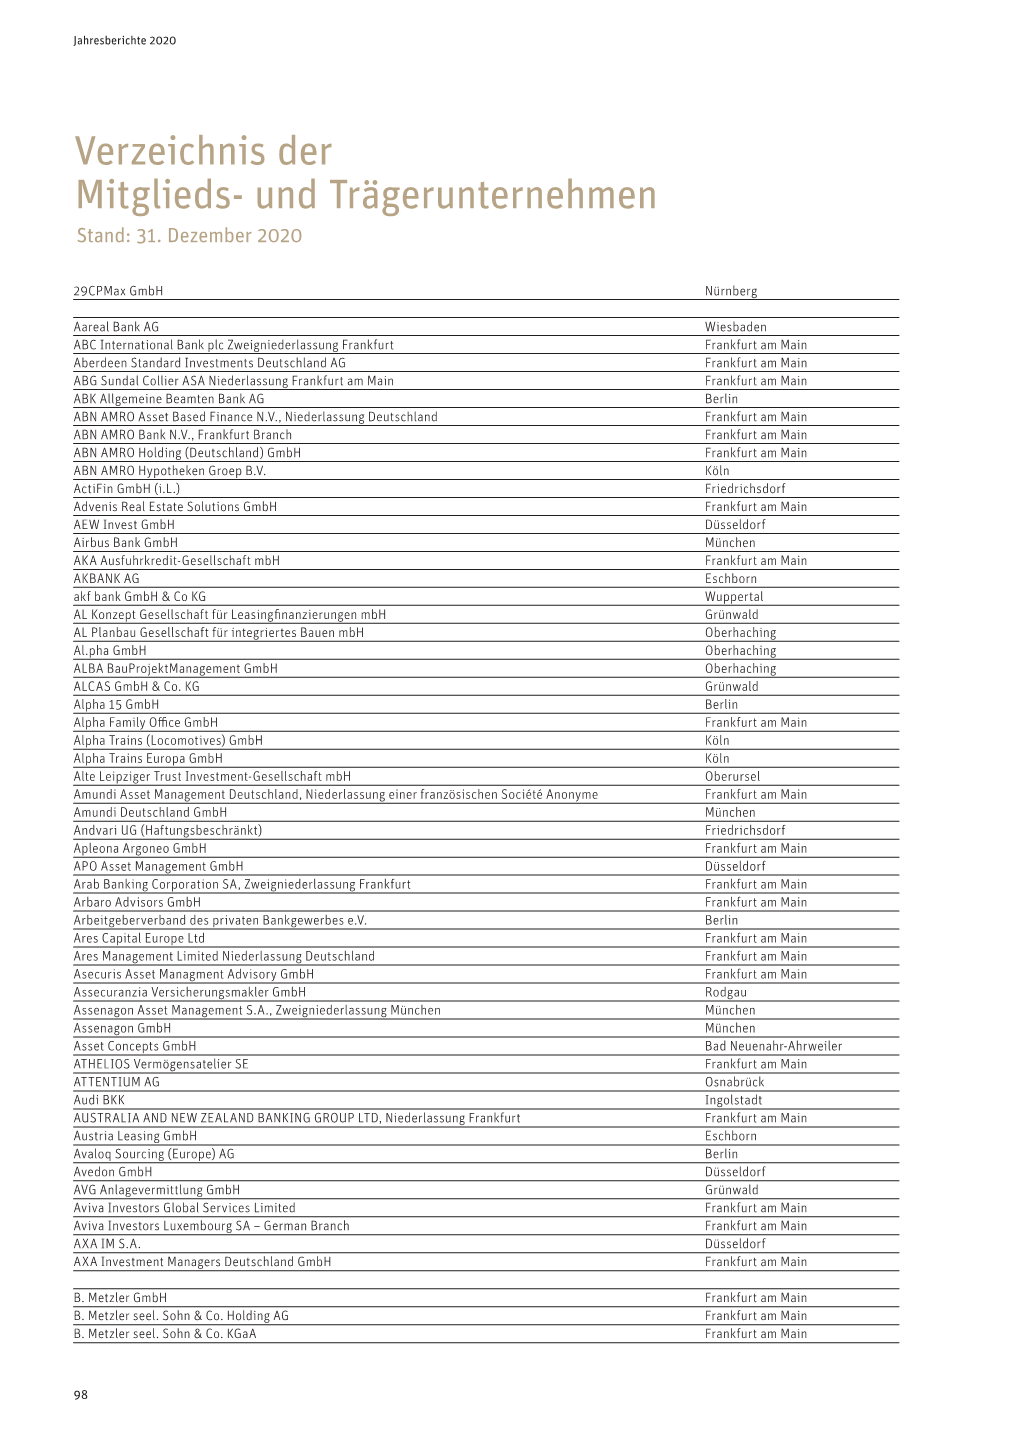 Mitgliederverzeichnis Aus Dem Aktuellen Jahresbericht PDF